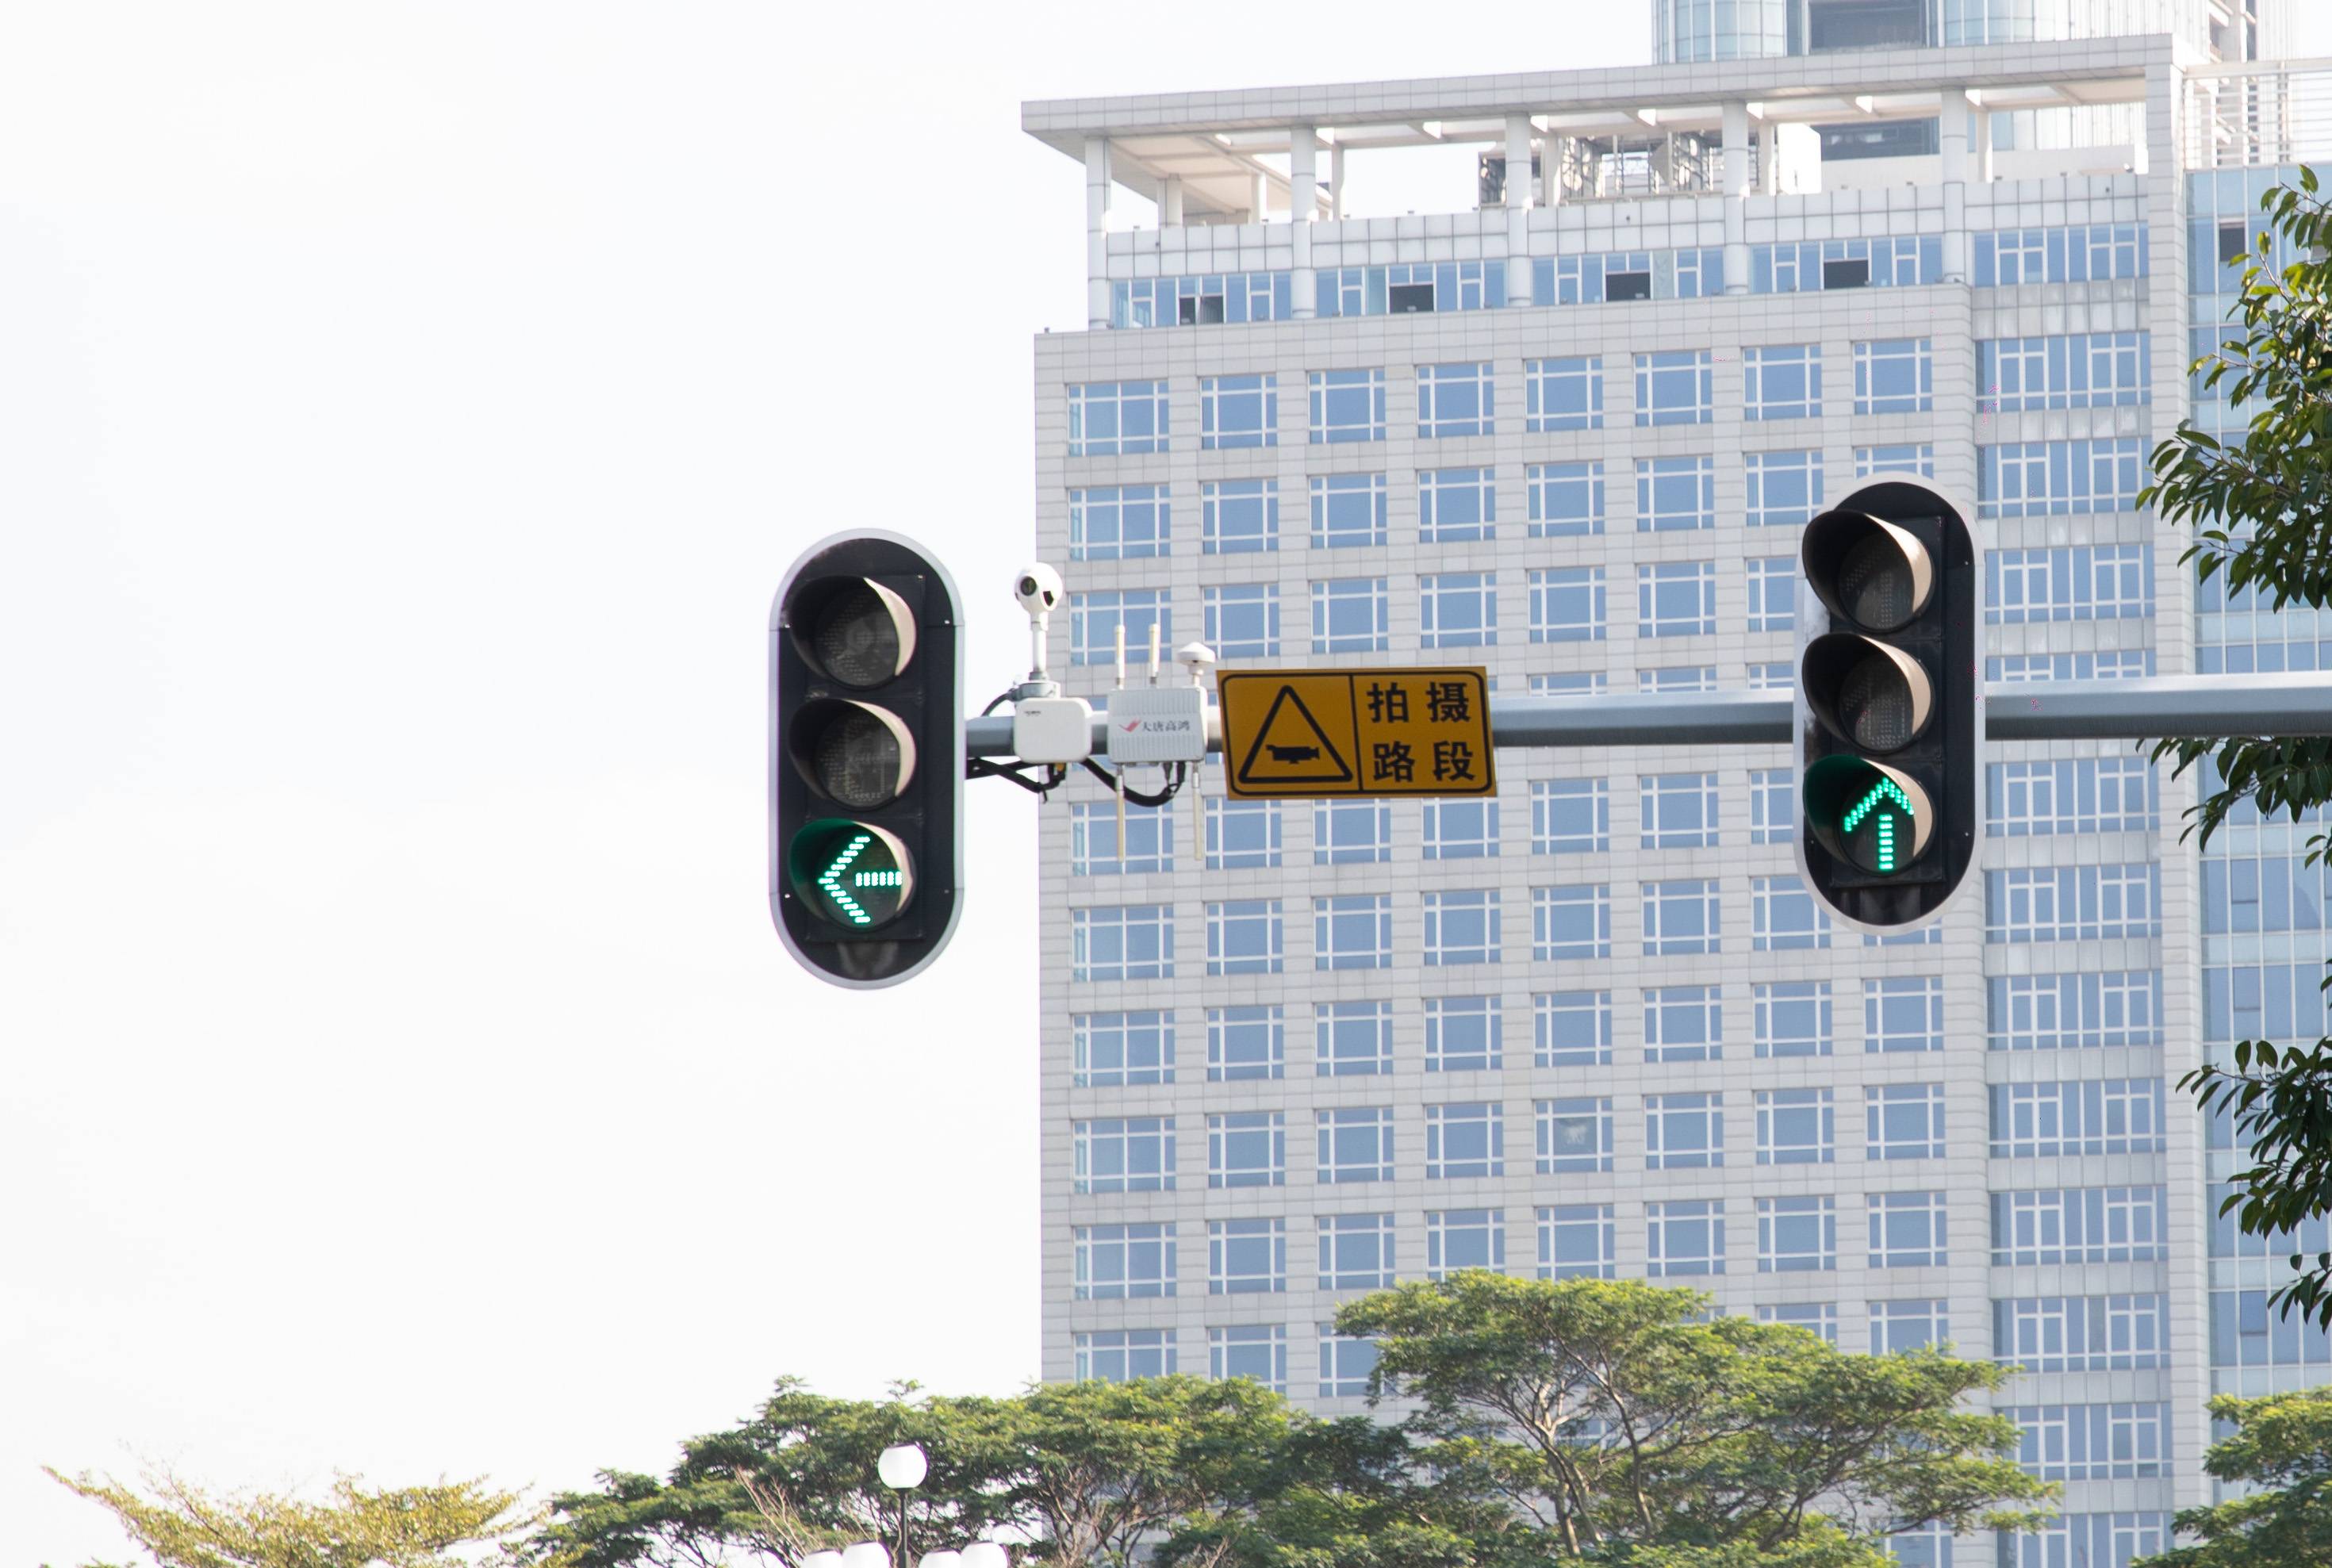 3 10 - Sposta il semaforo nel cruscotto, così non devi aspettare il semaforo rosso?